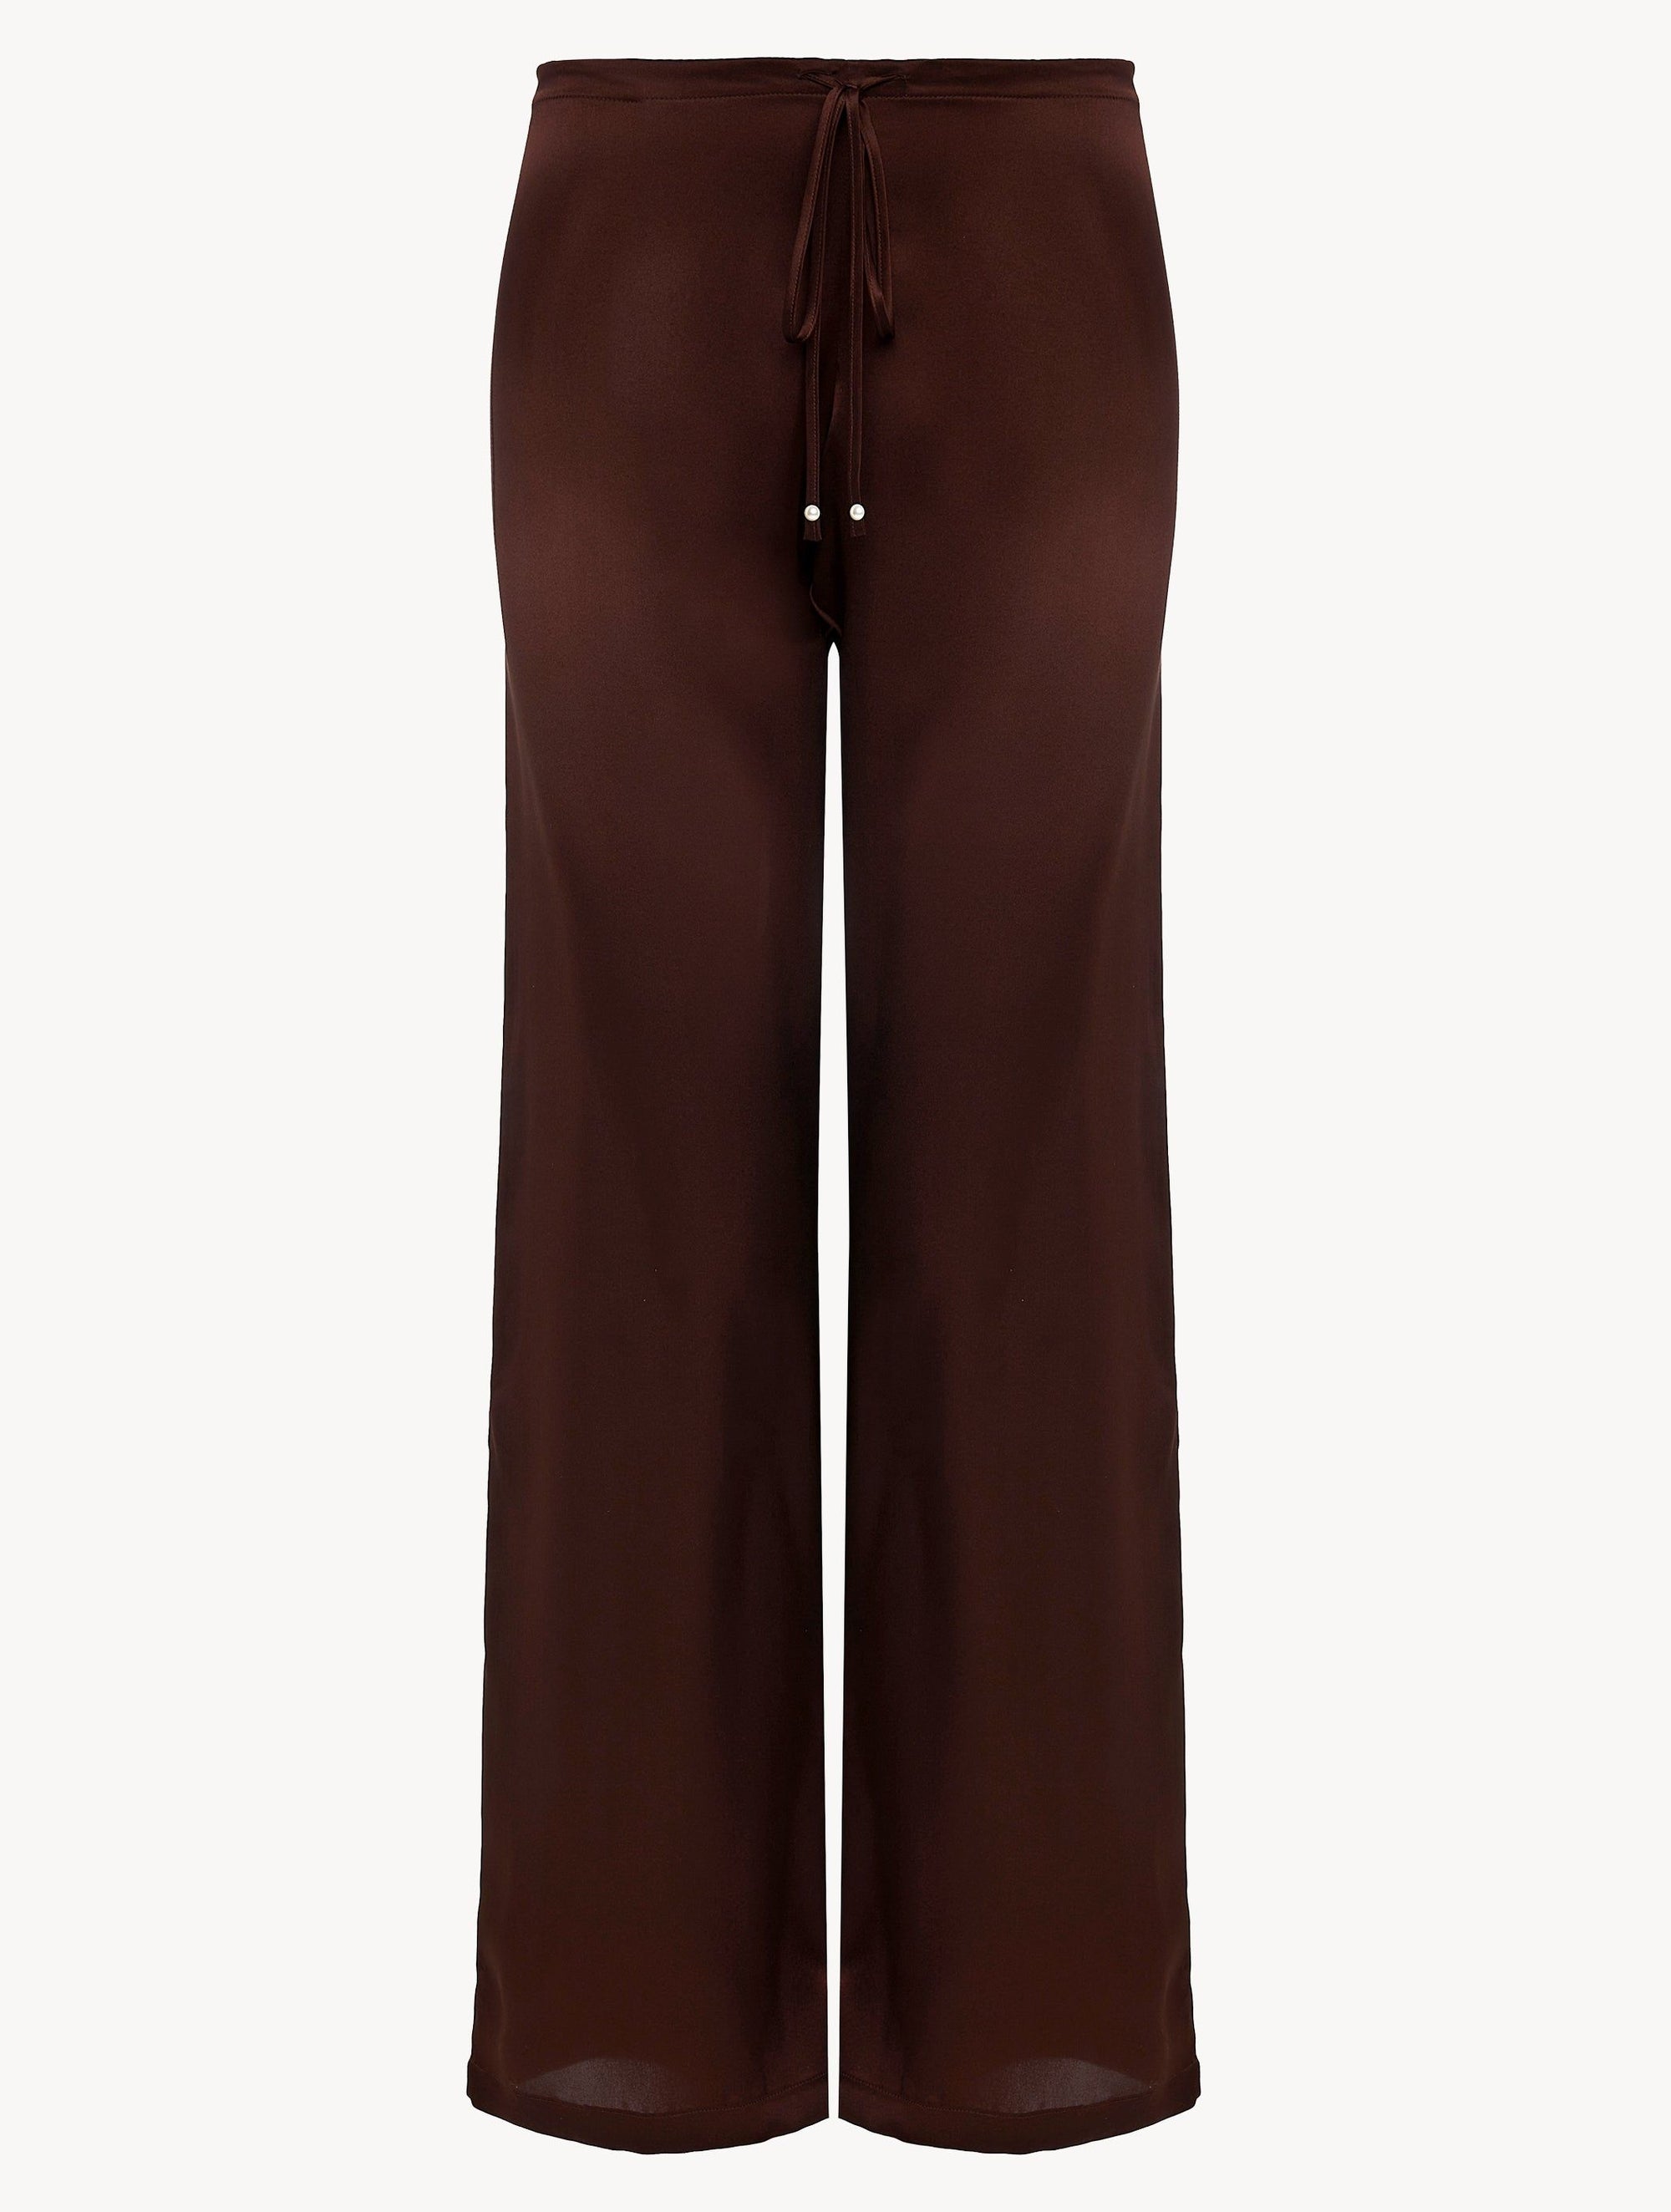 Metal Macrame long trousers in silk - Coffee & Copper